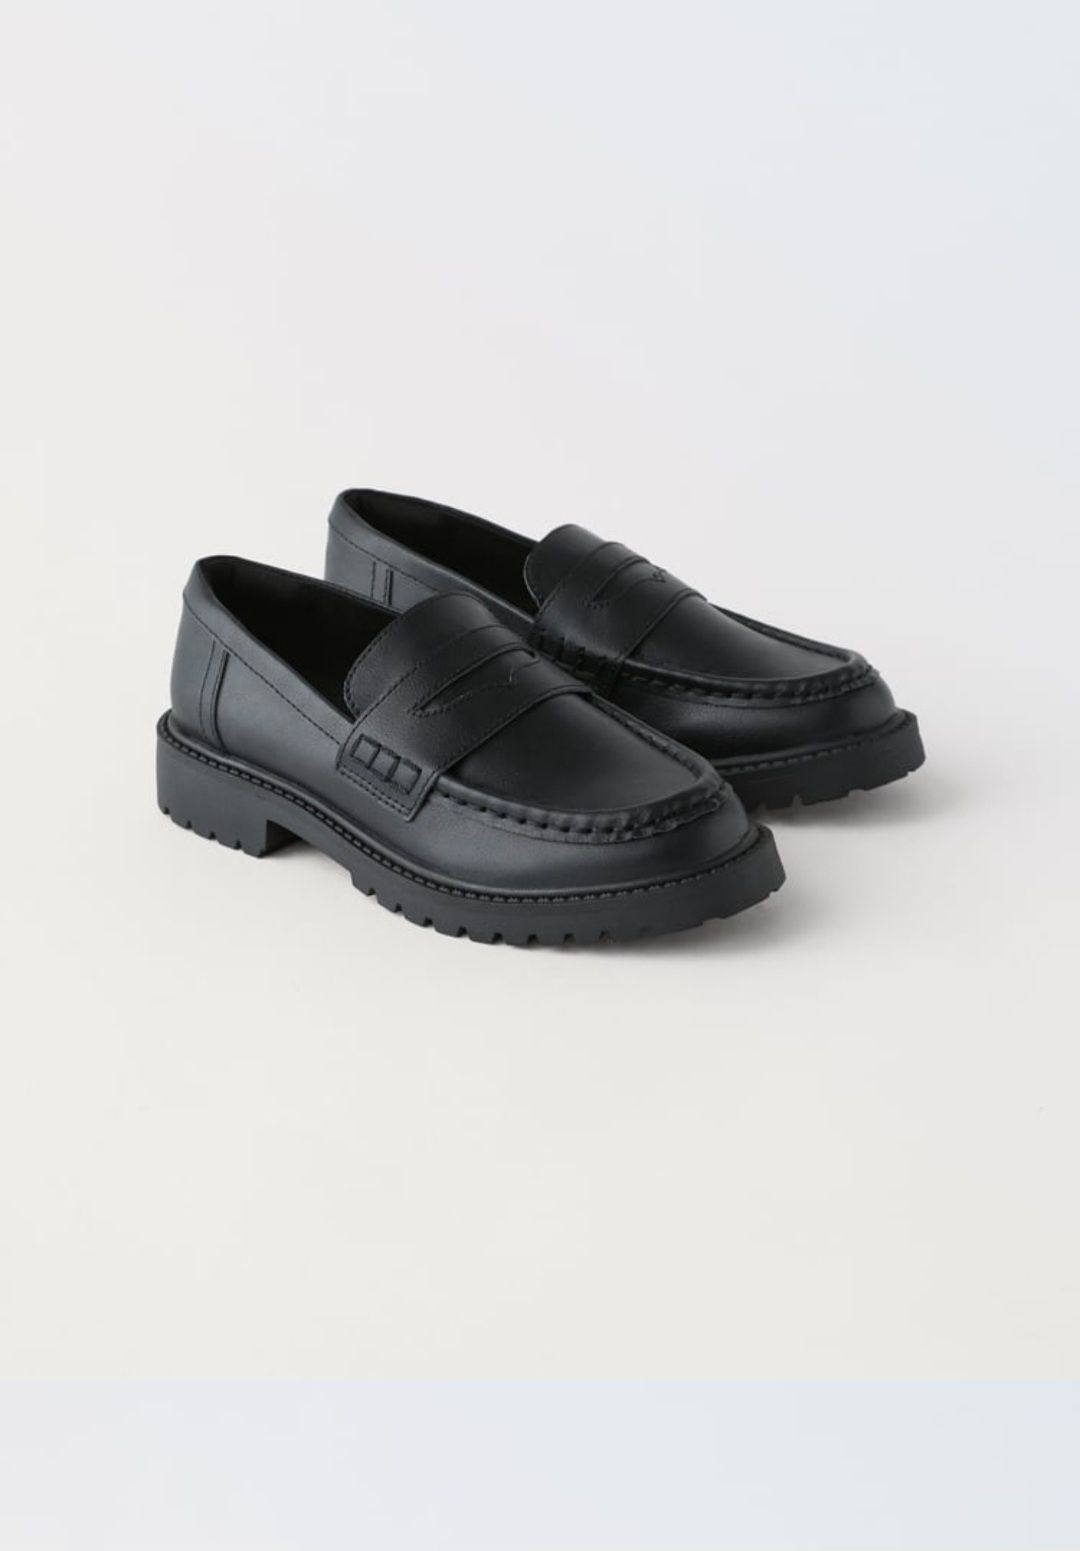 Новые Лоферы Zara школьные туфли для мальчика 33 и 36рр Зара обувь